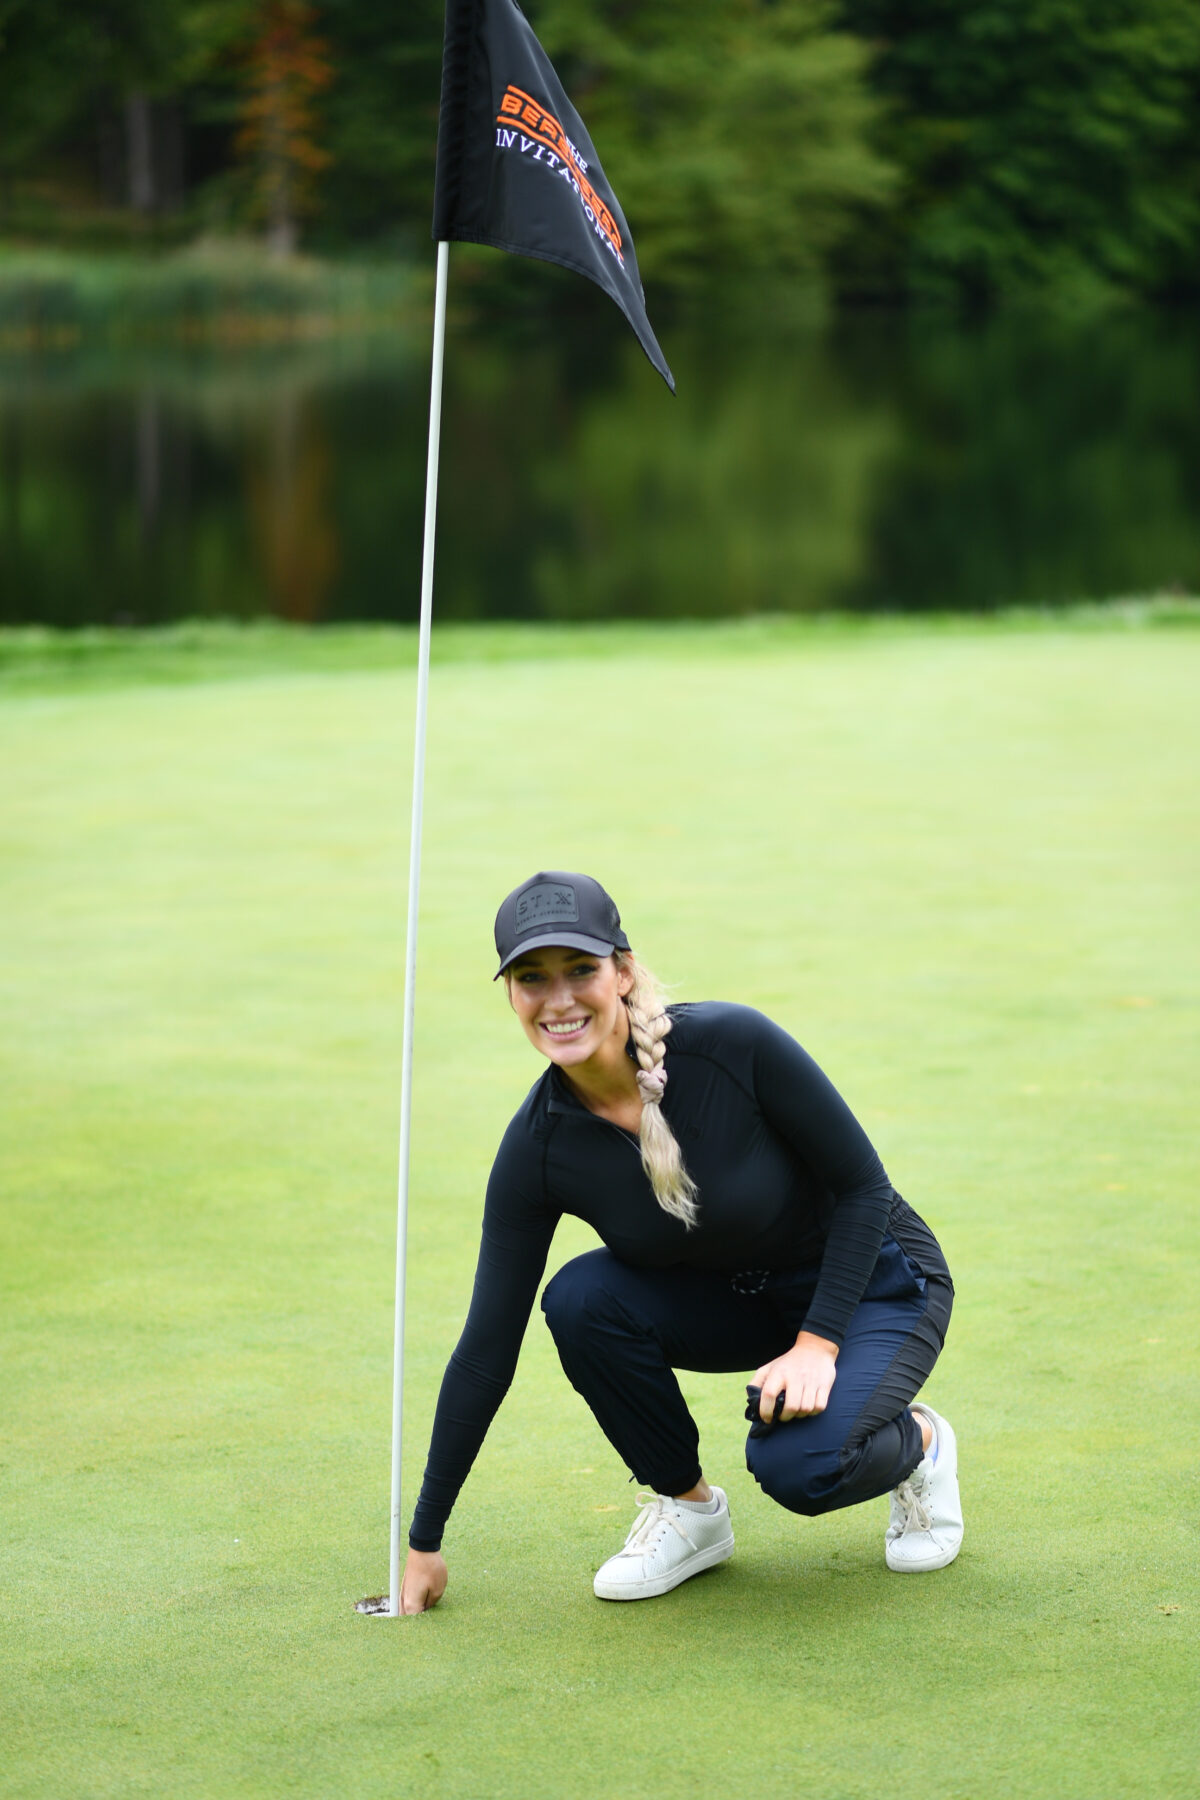 Golf influencer Paige Spiranac through the years